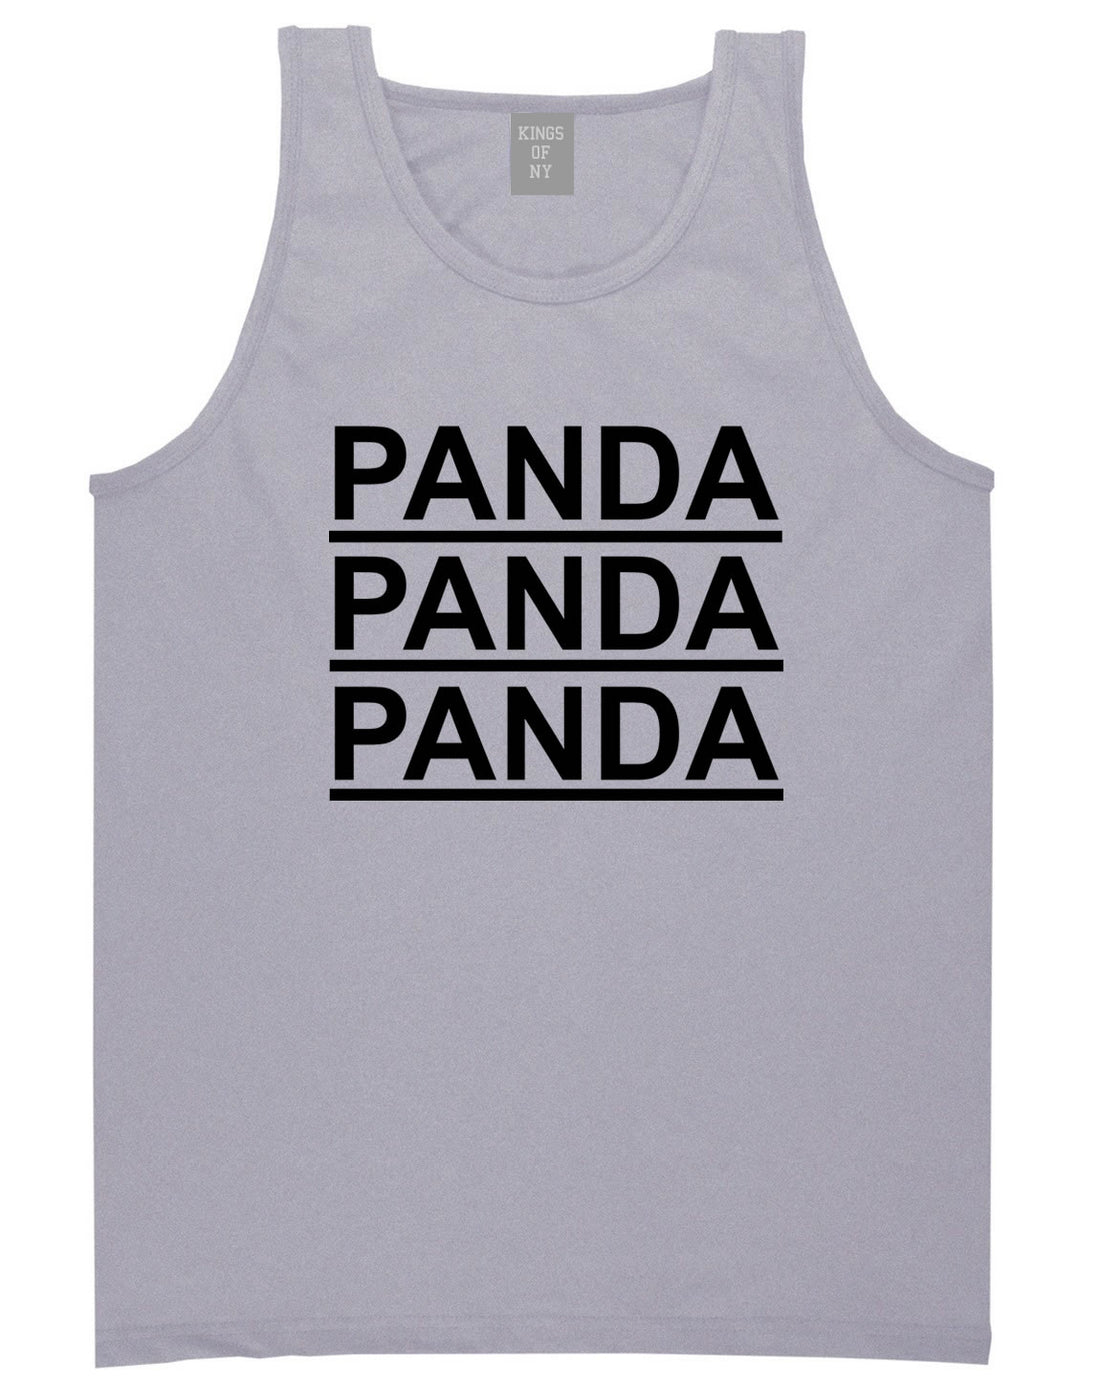 Panda Panda Panda Tank Top